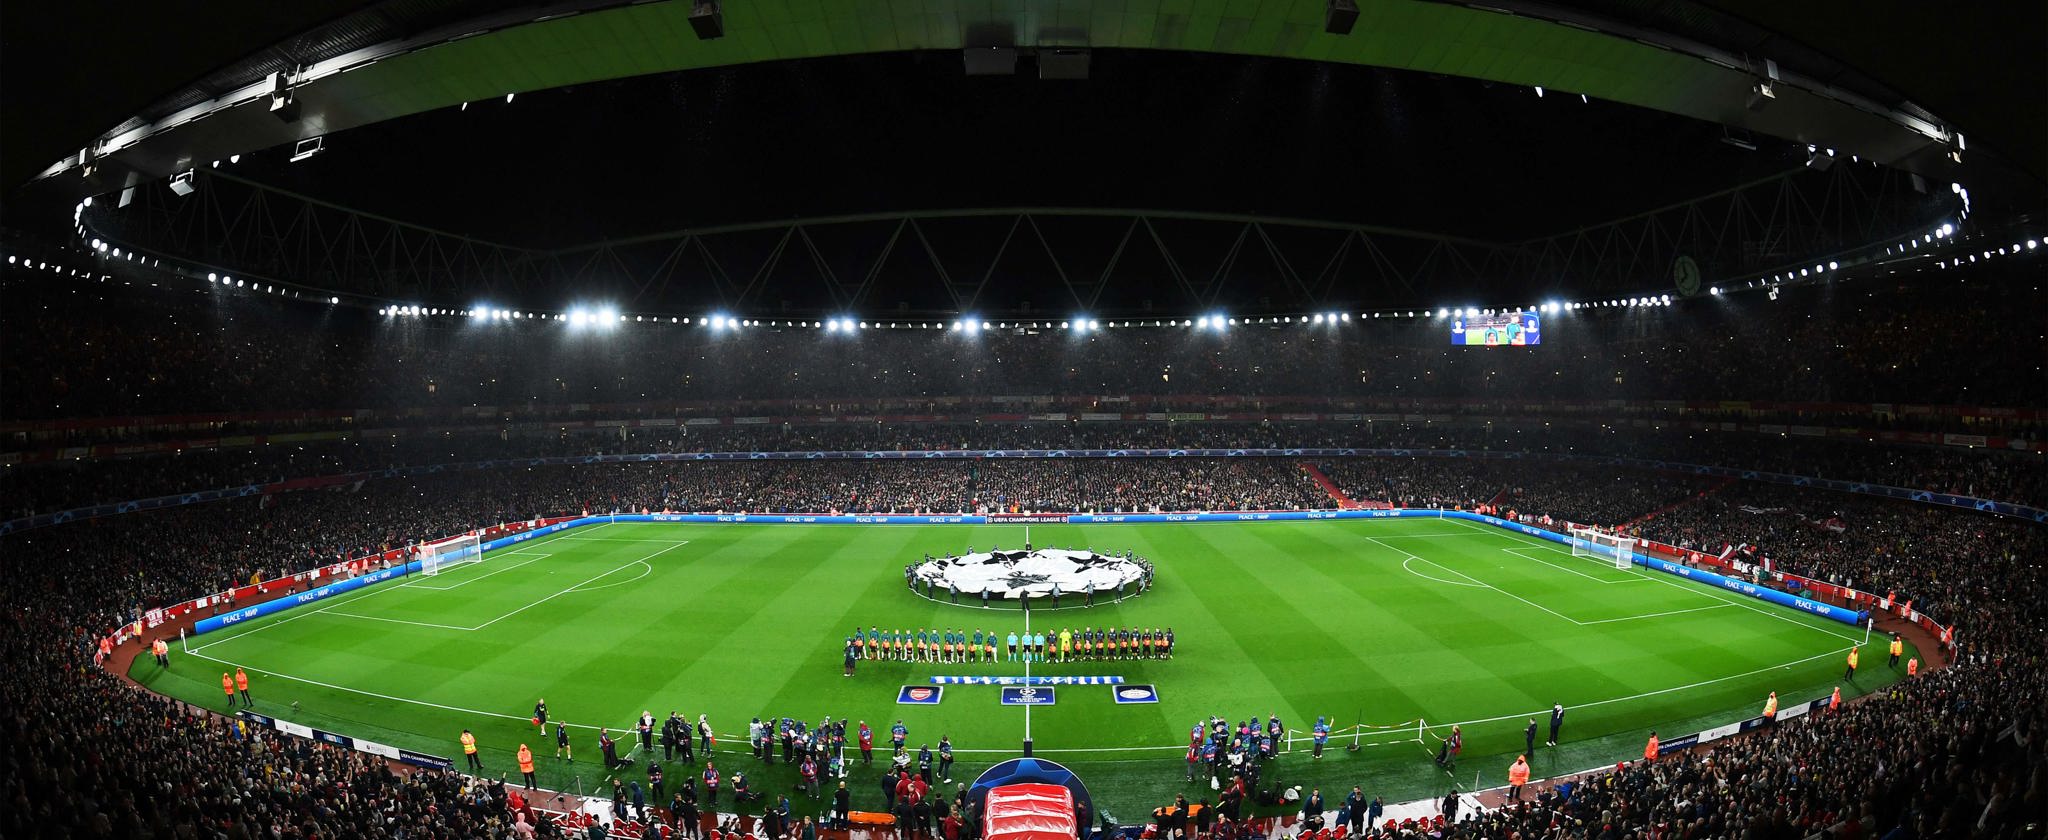 Champions League night at Emirates Stadium